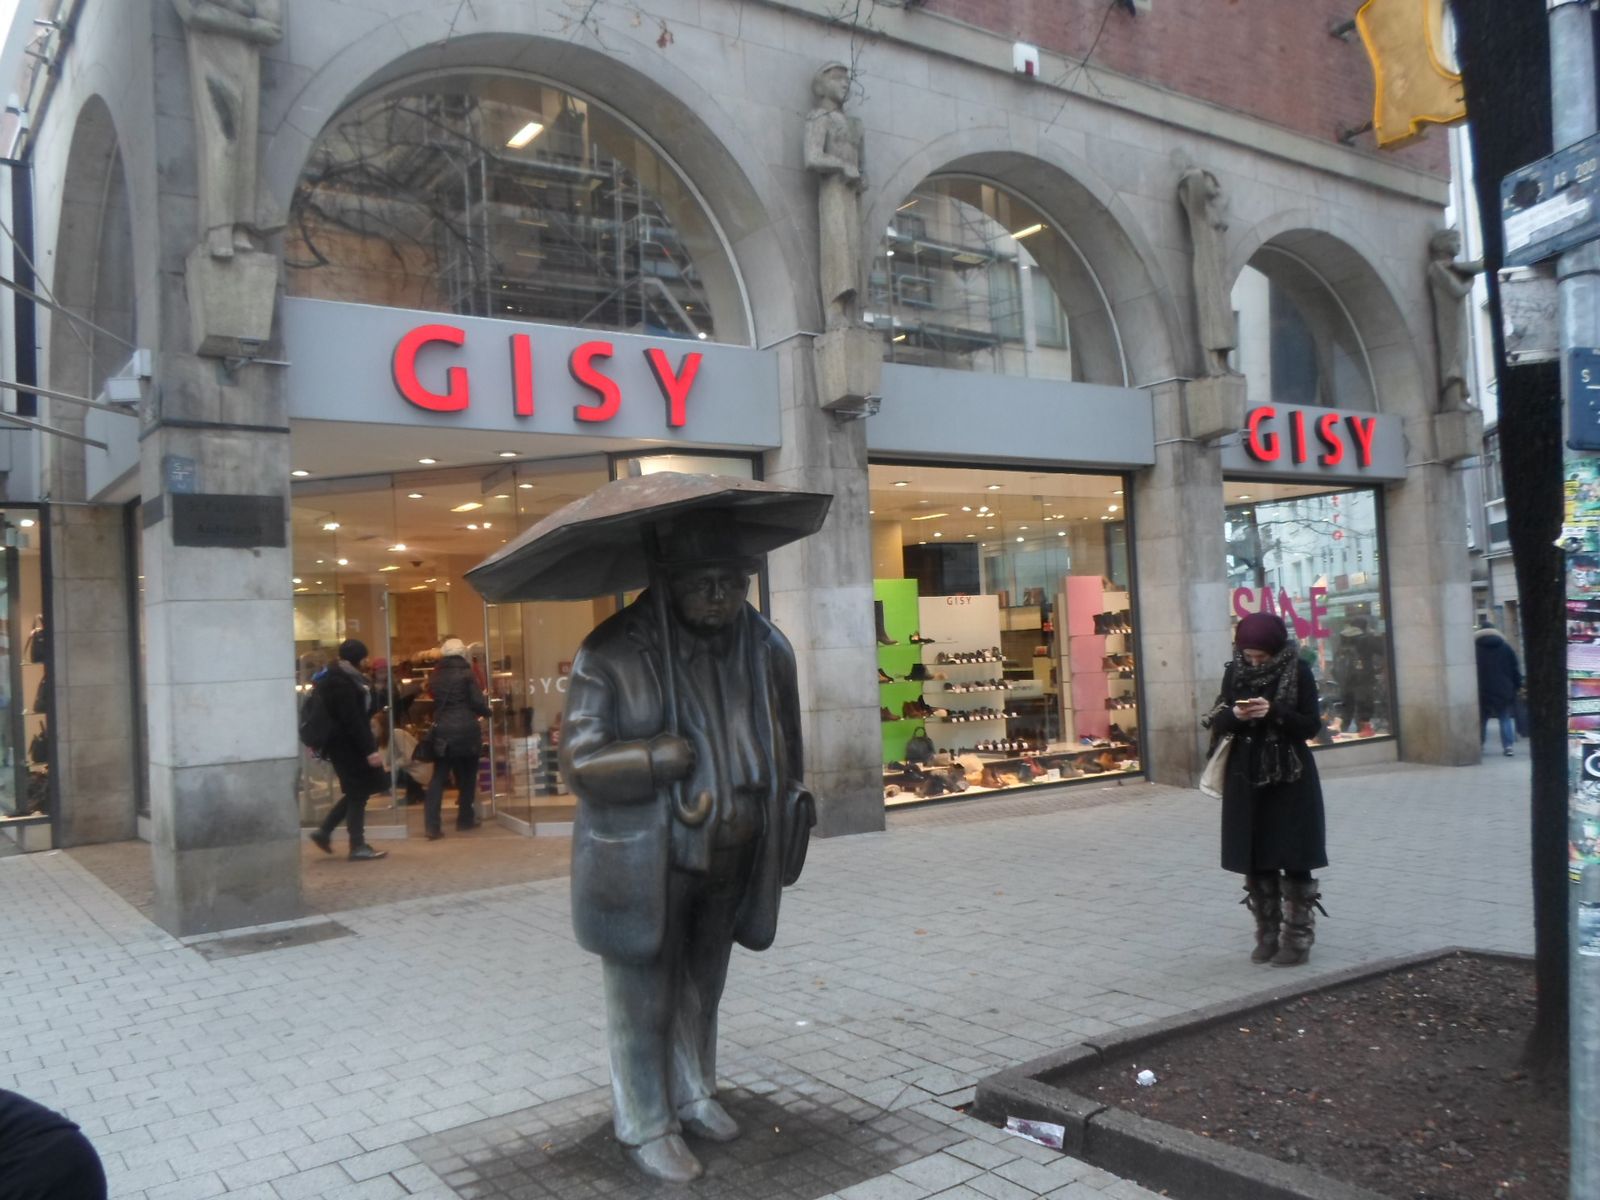 Gisy Schuhe GmbH & Co. in Hannover ⇒ in Das Örtliche